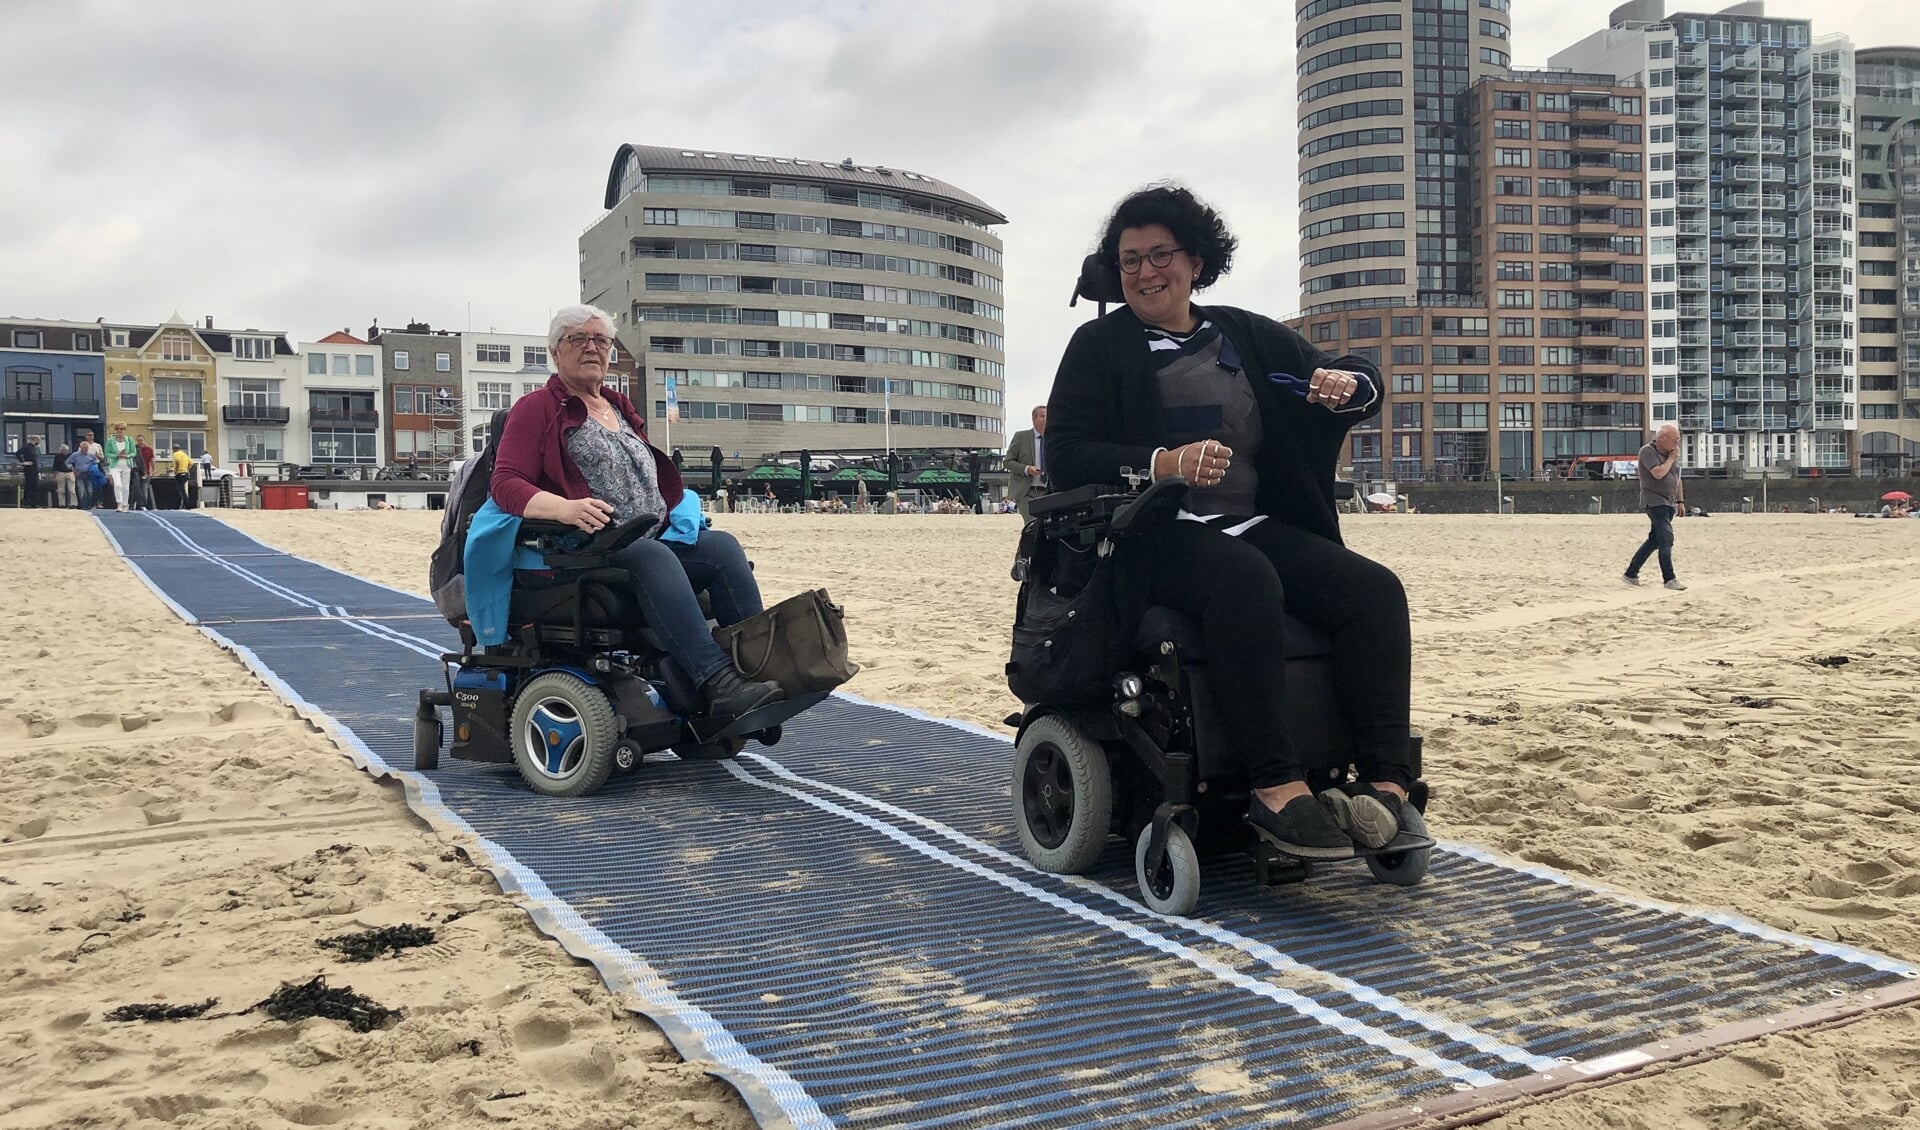 De mat helpt rolstoelers het strand op.